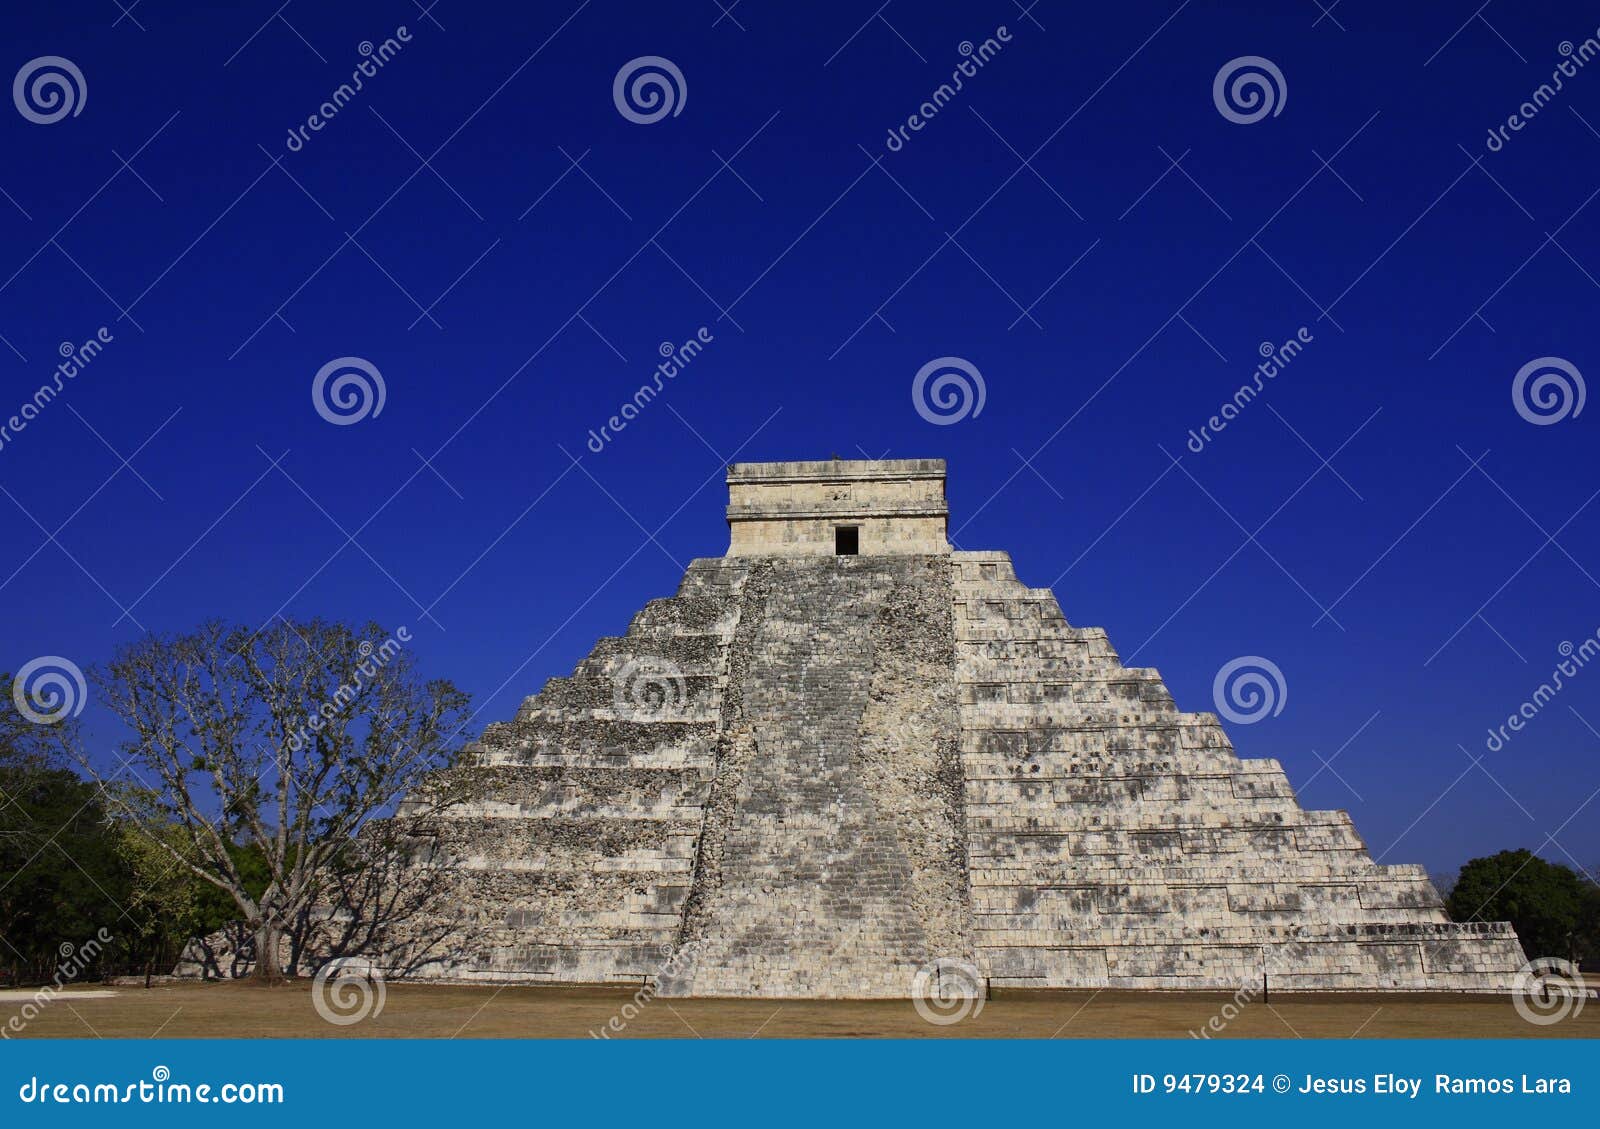 kukulcan temple in chichenitza, yucatan, mexico.